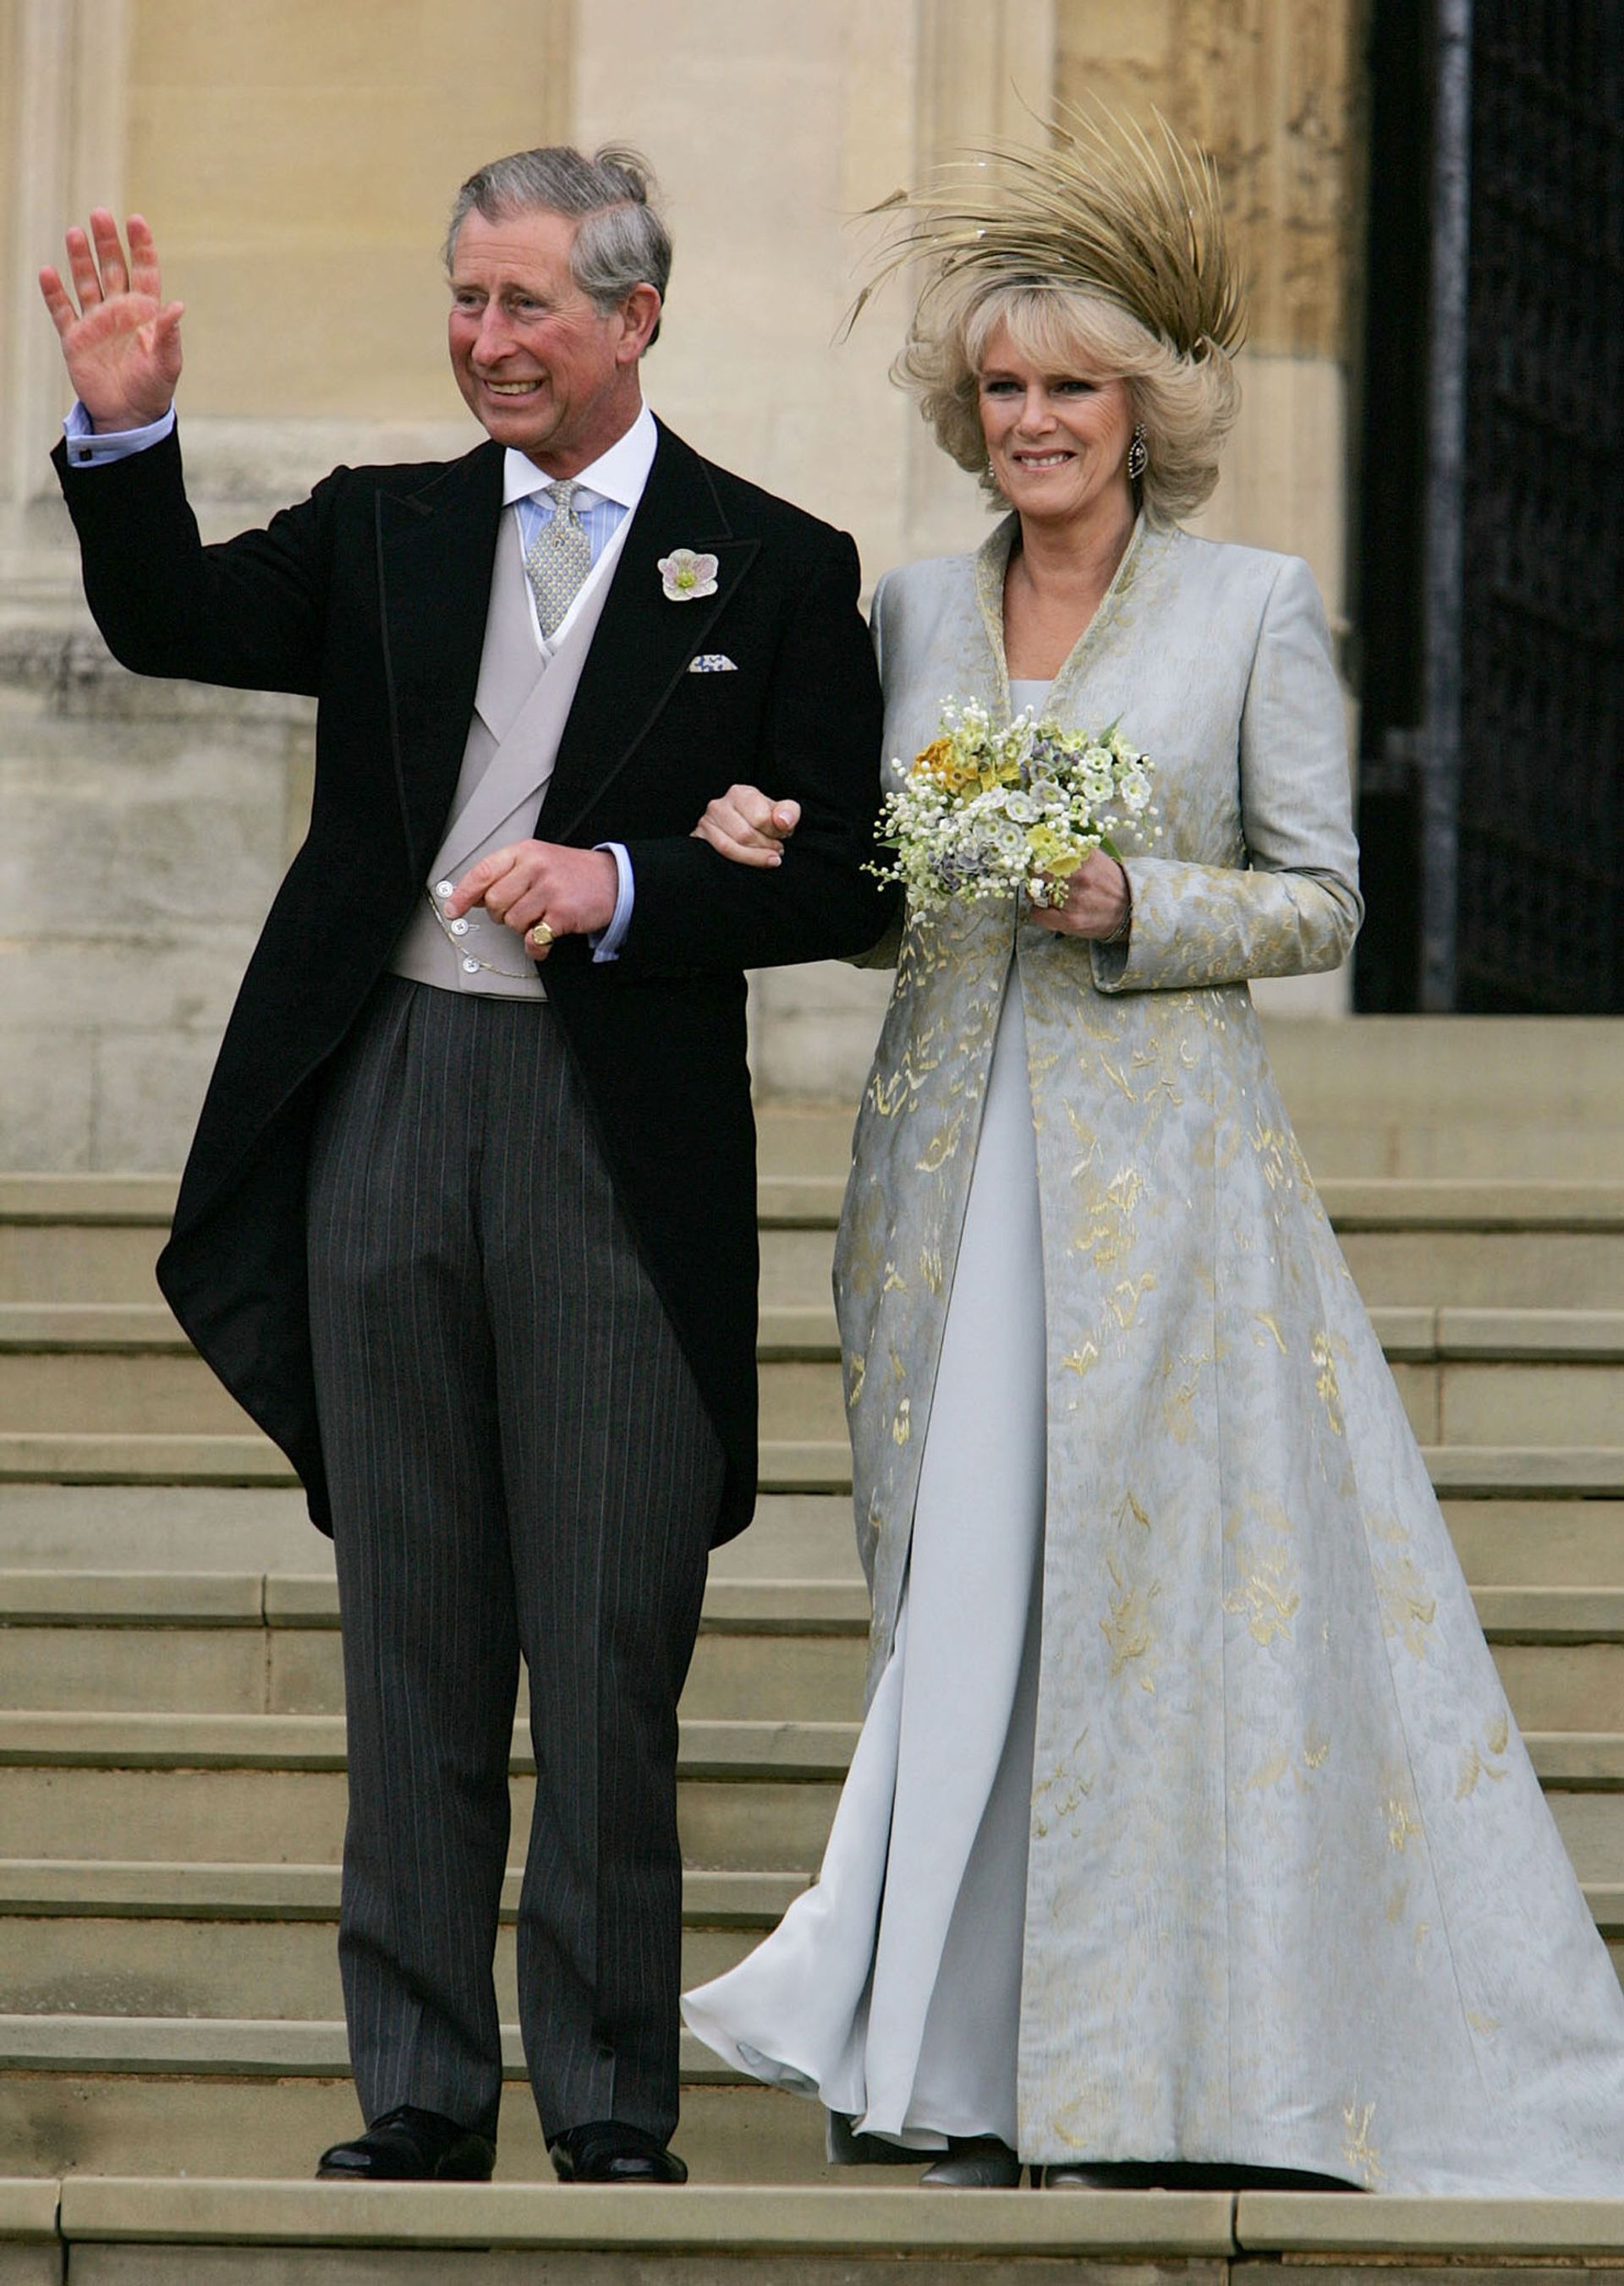 Huwelijk Charles en Camilla 2005